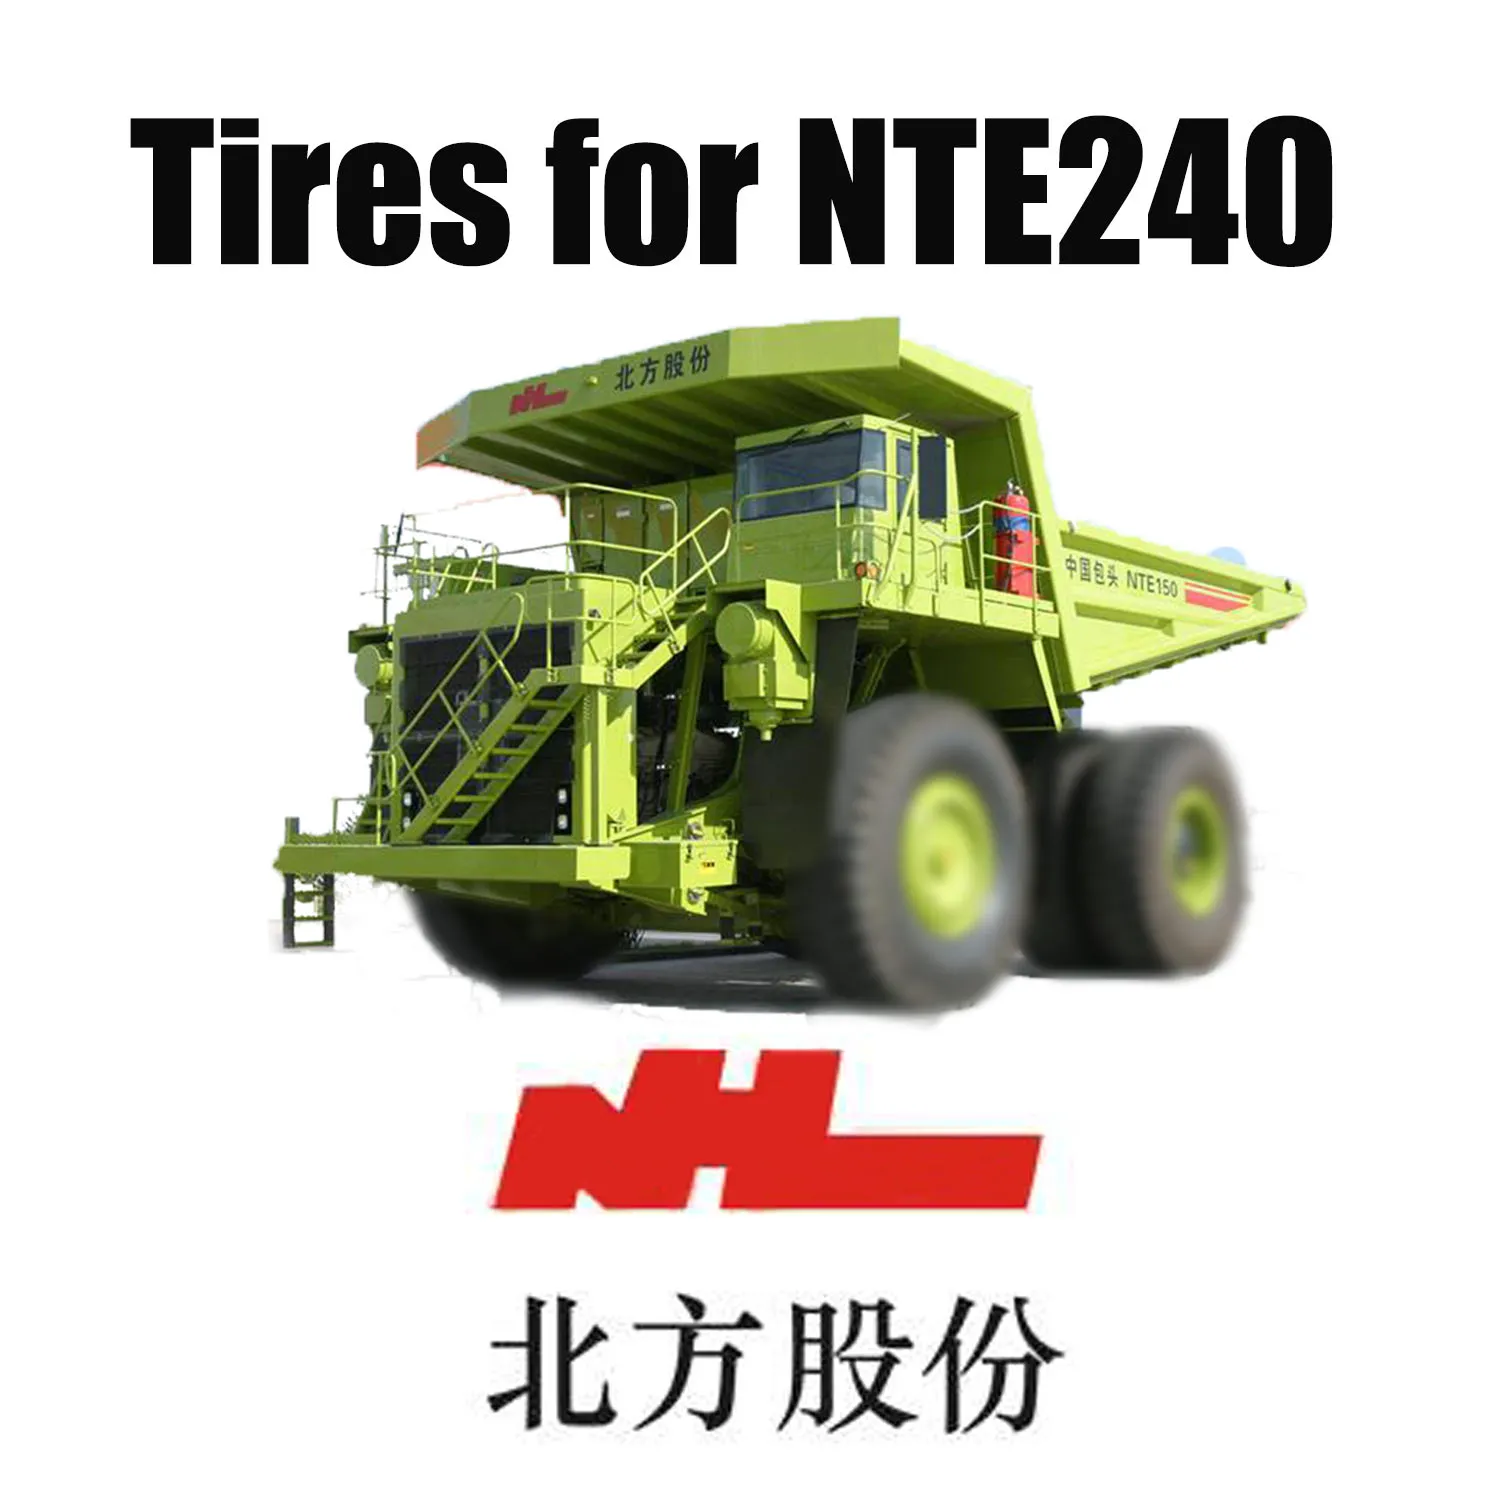 معدات النقل الثقيل NTE 240 مزودة بإطارات OTR للطرقات الوعرة مقاس 46 / 90R57